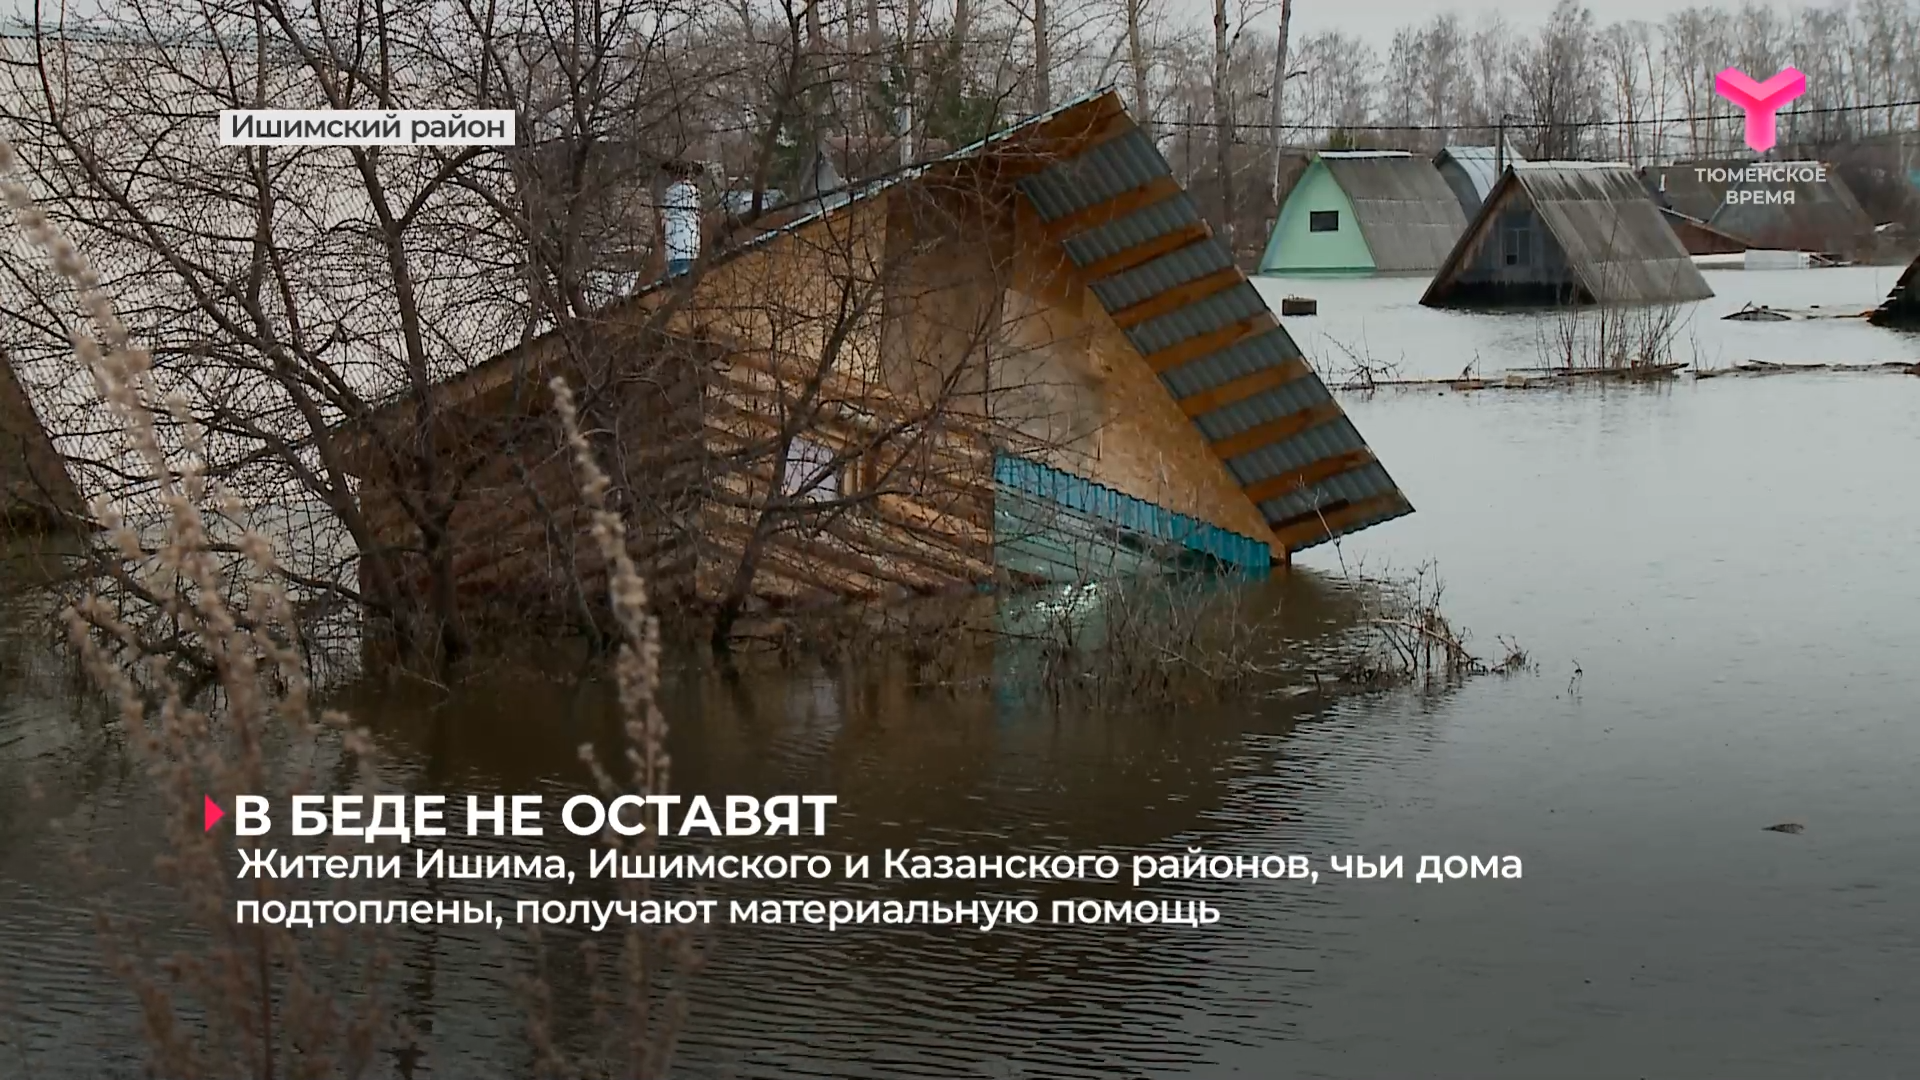 Жители Ишима, Ишимского и Казанского районов, чьи дома подтоплены, получают материальную помощь